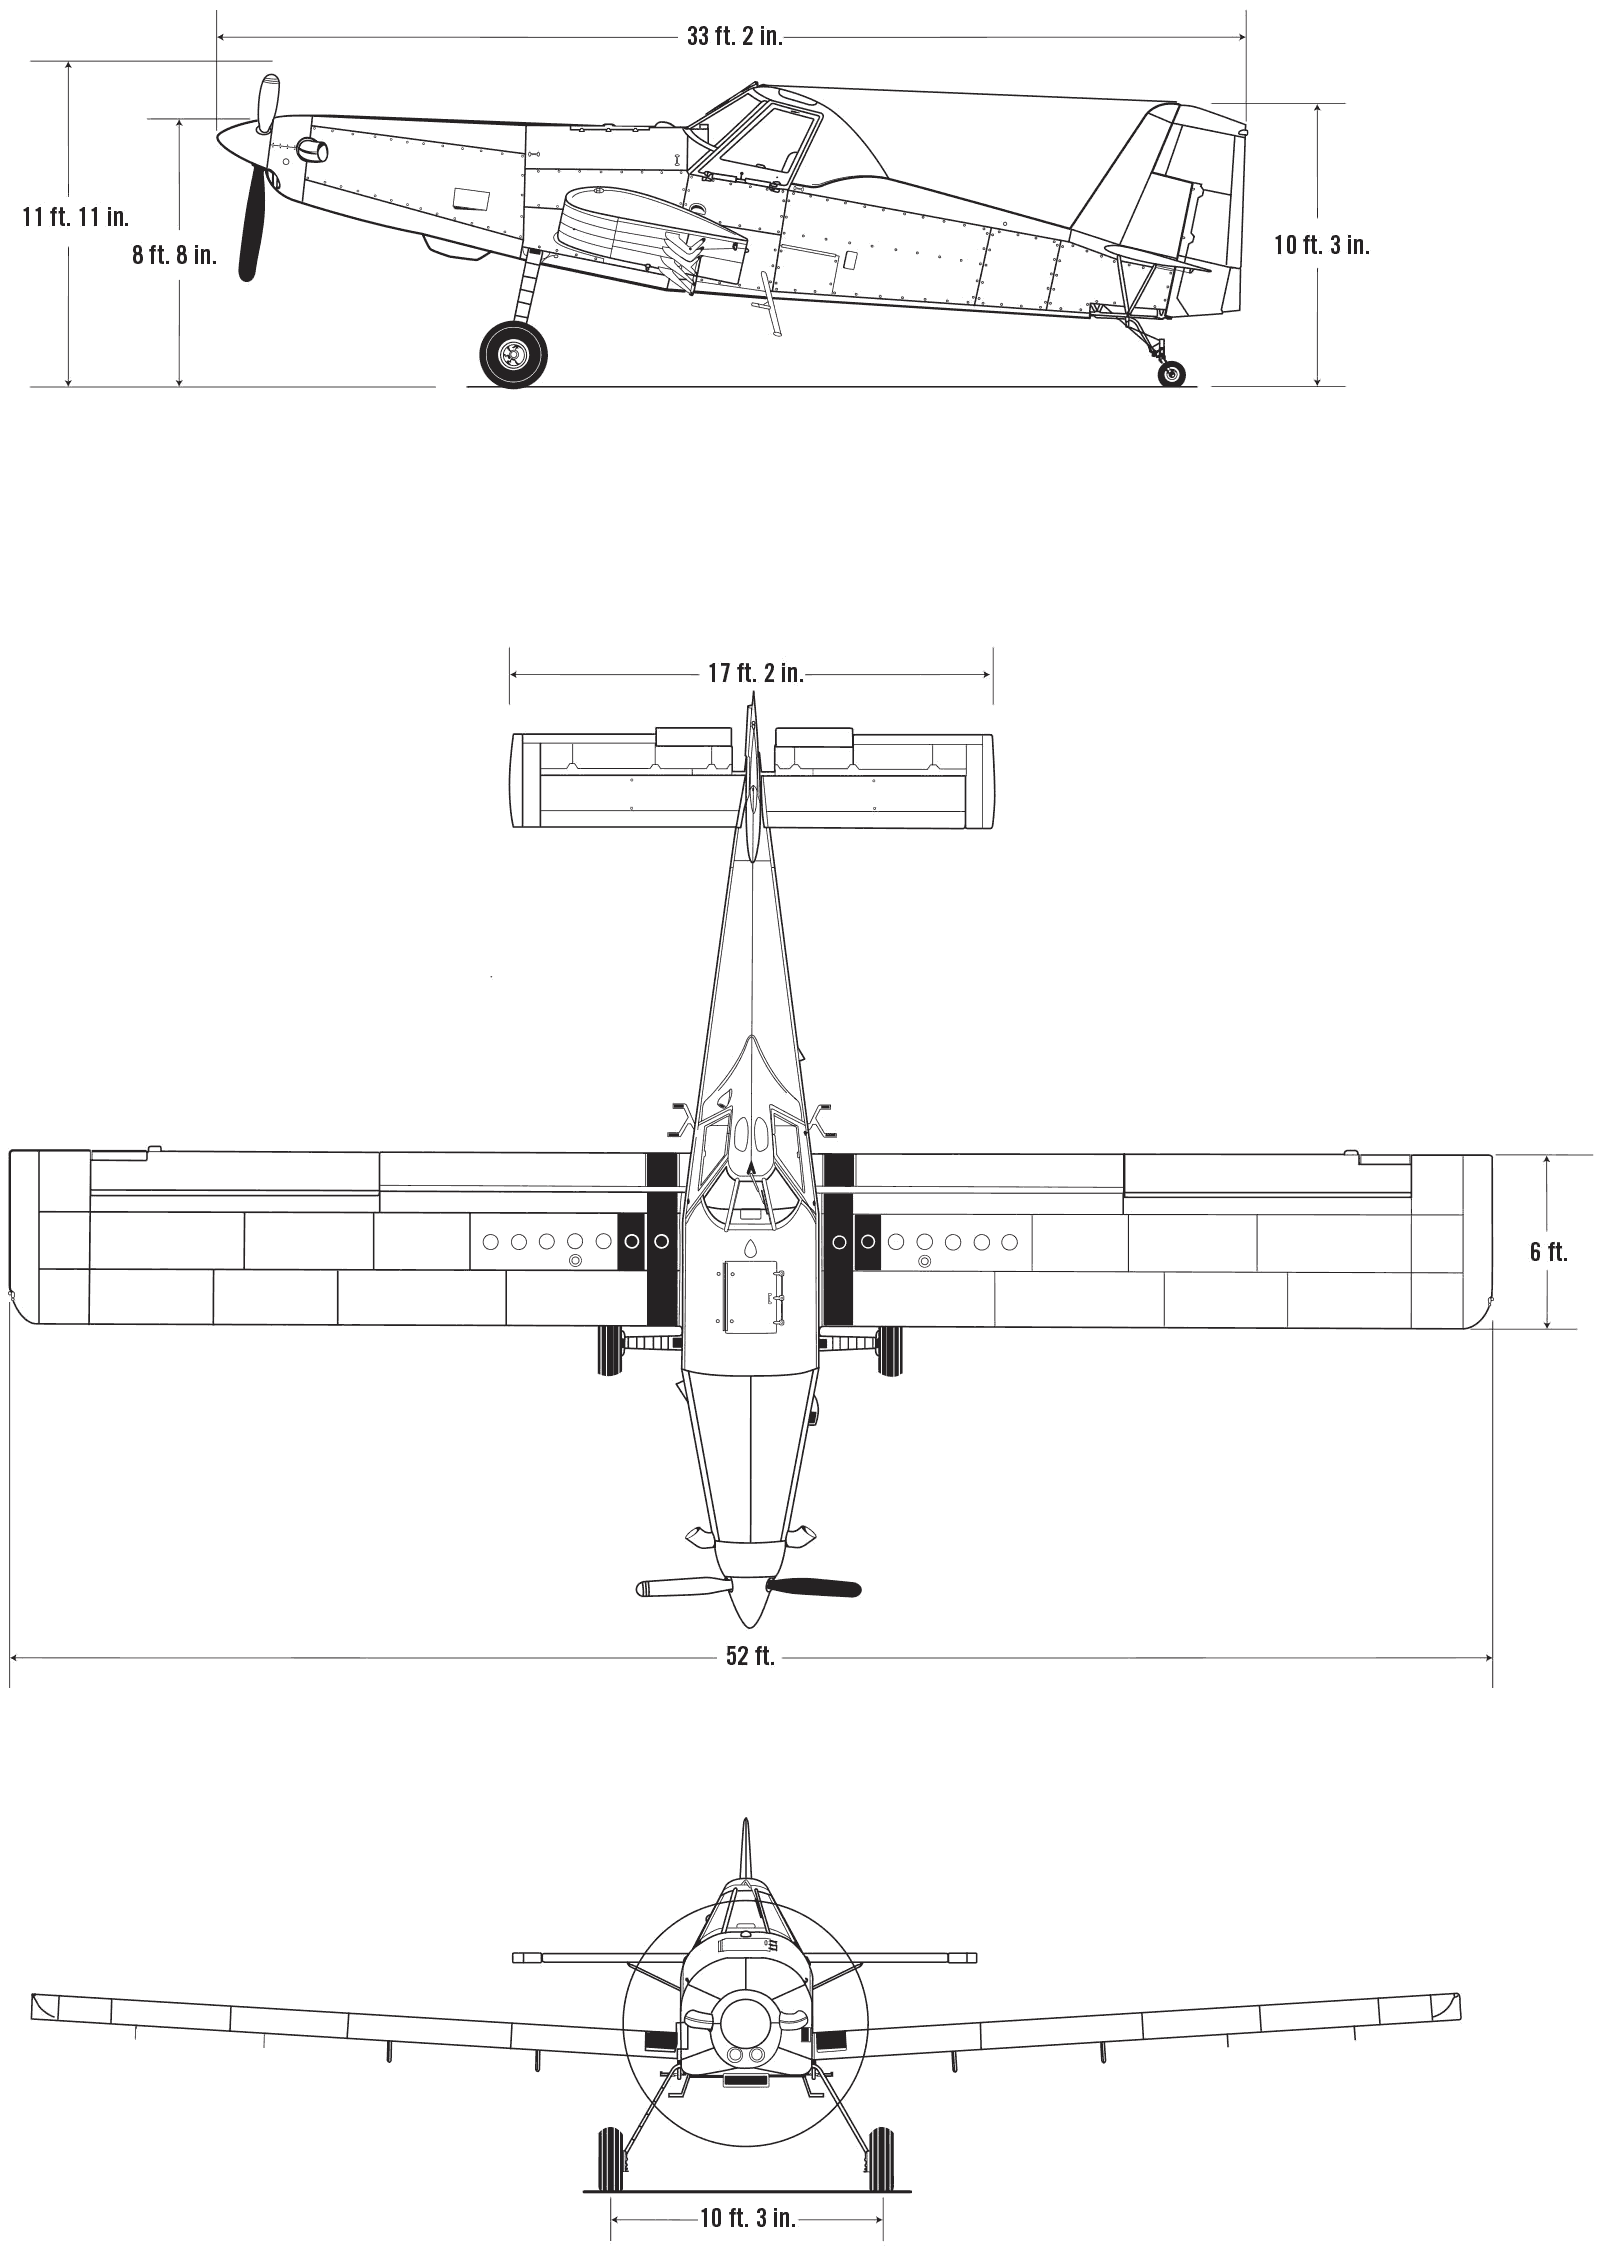 Air Tractor AT-502B blueprint